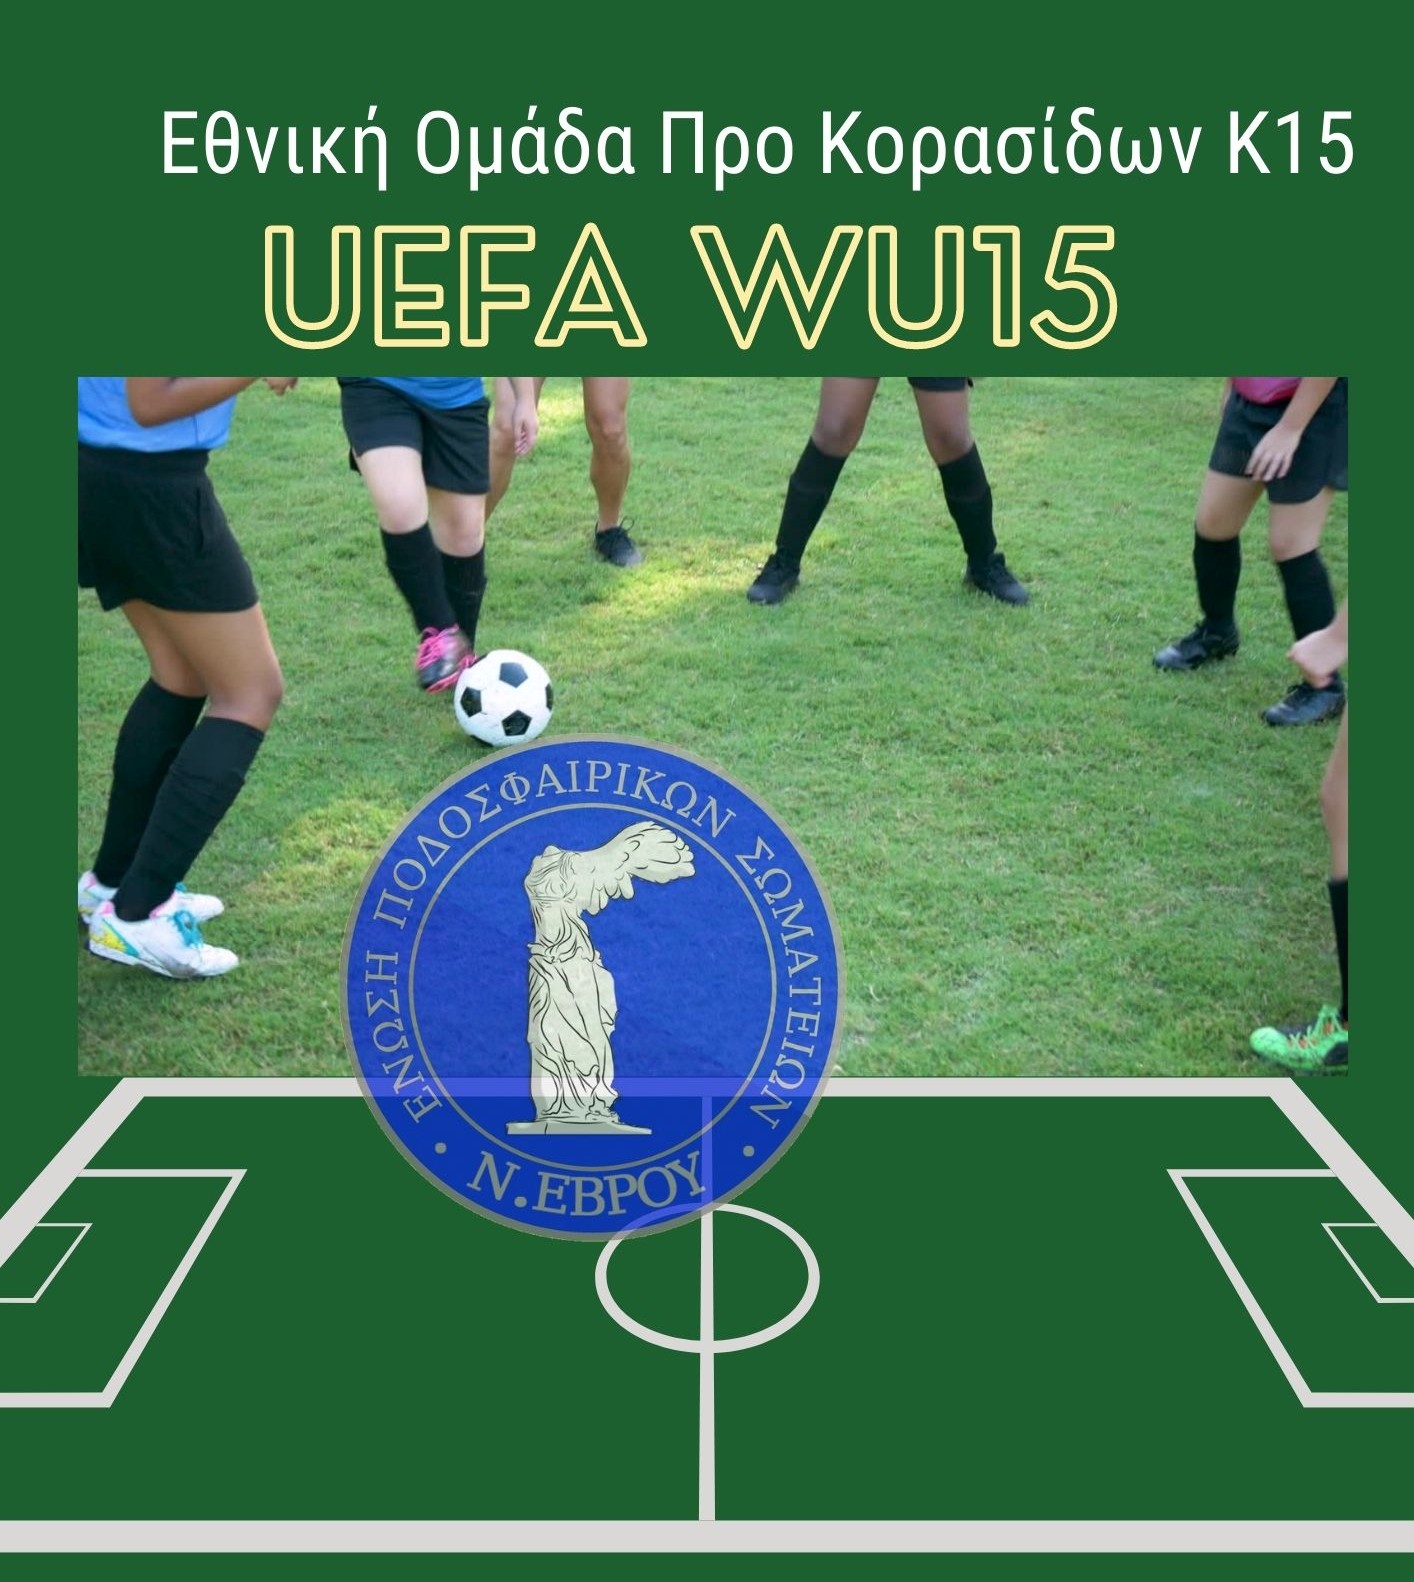 Συμμετοχή στην Εθνική Ομάδα Προ Κορασίδων Κ15 ενόψει UEFA WU15 Development Tournament